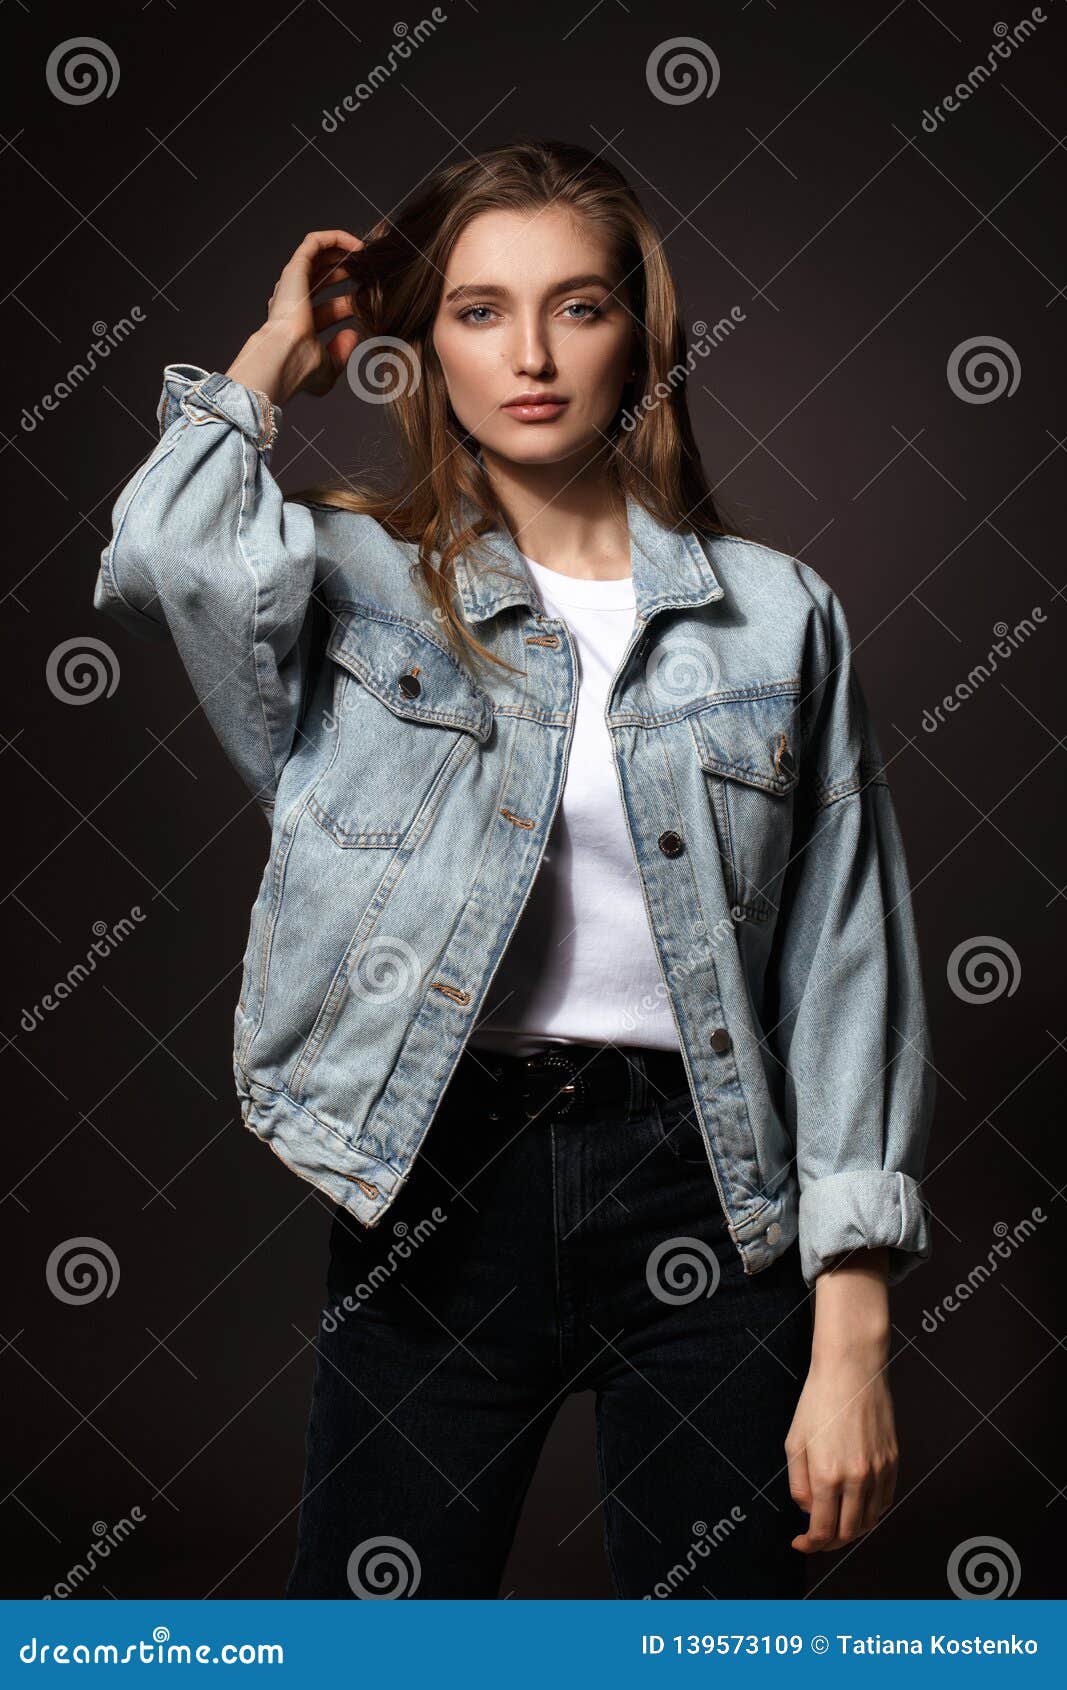 Download Cute Girl Pose In Denim Jeans Wallpaper | Wallpapers.com